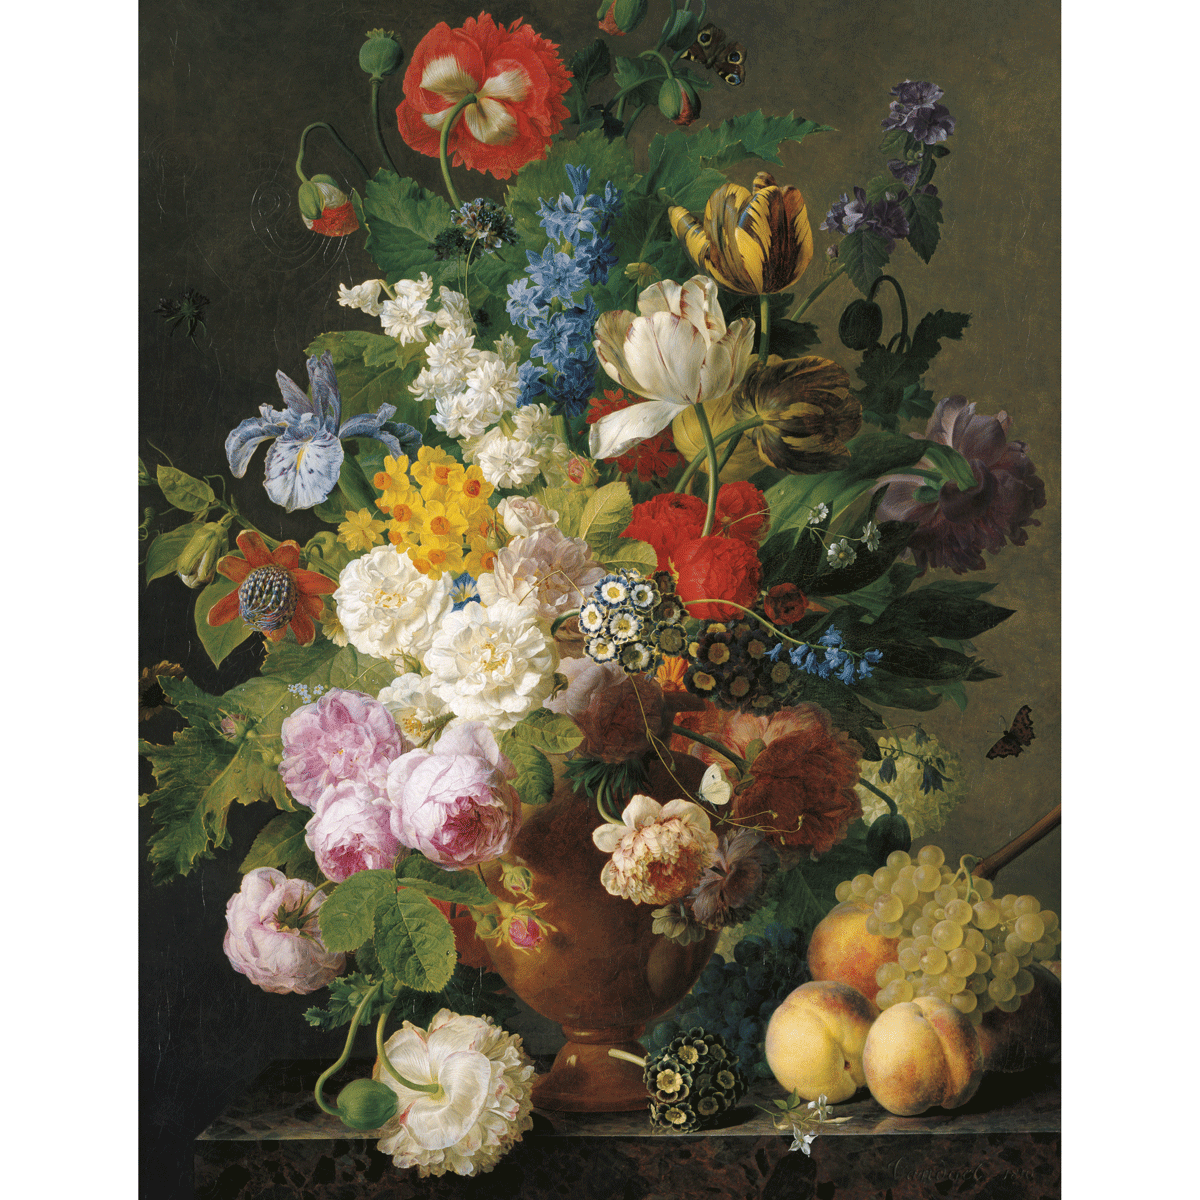 Clementoni puzzle museum collection - van dael, "bowl of flowers" - 1000 pezzi, puzzle adulti - CLEMENTONI